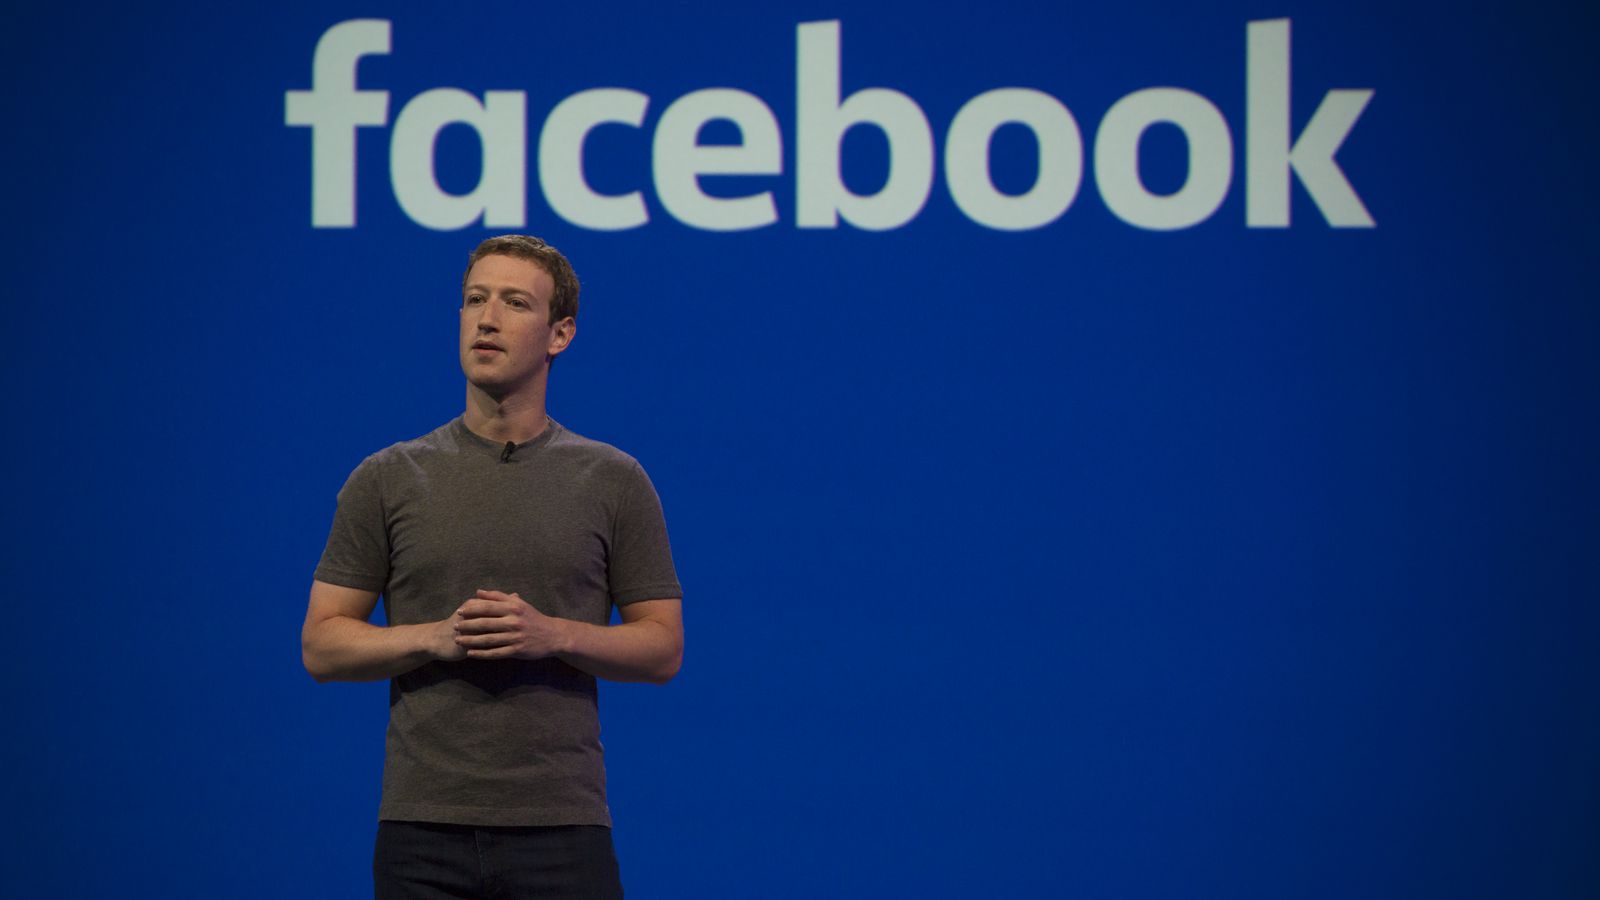 Παραδοχή Μ. Ζούκερμπεργκ ότι θα χρειαστεί χρόνια να λύσει τα προβλήματα προστασίας των προσωπικών δεδομένων του Facebook